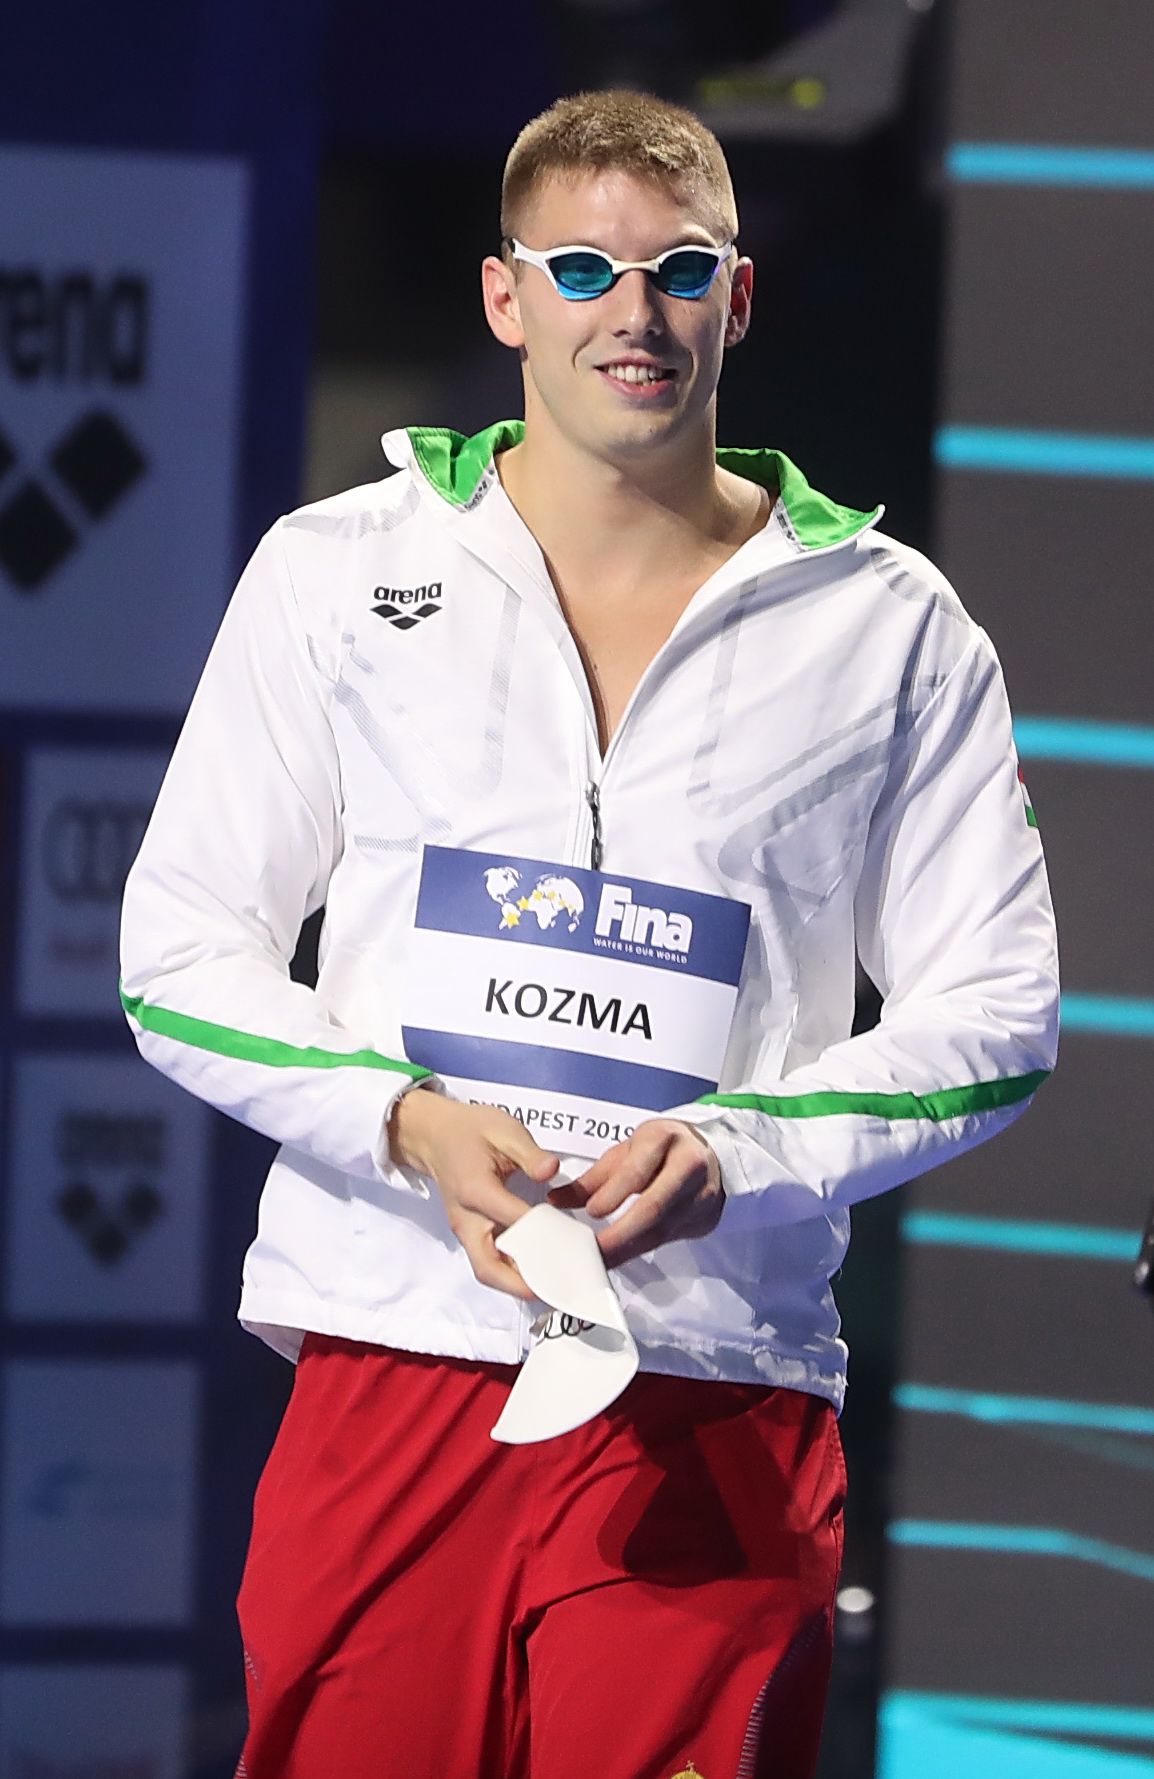 Kozma Dominik és társai jól akarnak szerepelni hazai medencében – ehhez a szigorú feltételeket is vállalták / Fotó: Pozsonyi Zita